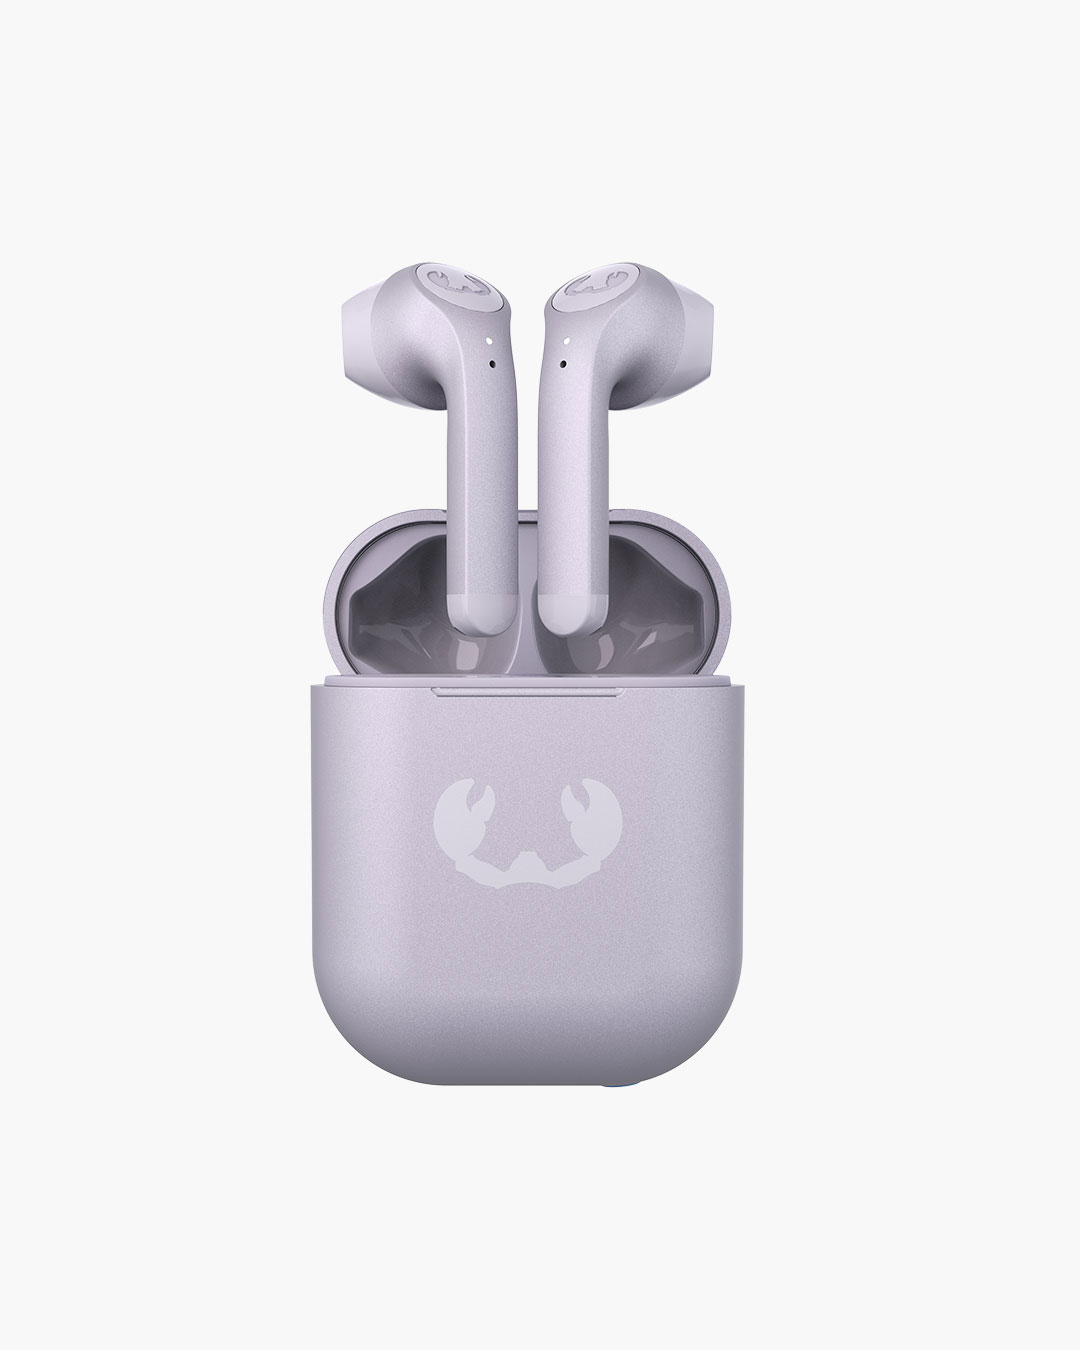 Fresh 'n Rebel - Twins 3 - True Wireless In-ear headphones - Dreamy Lilac